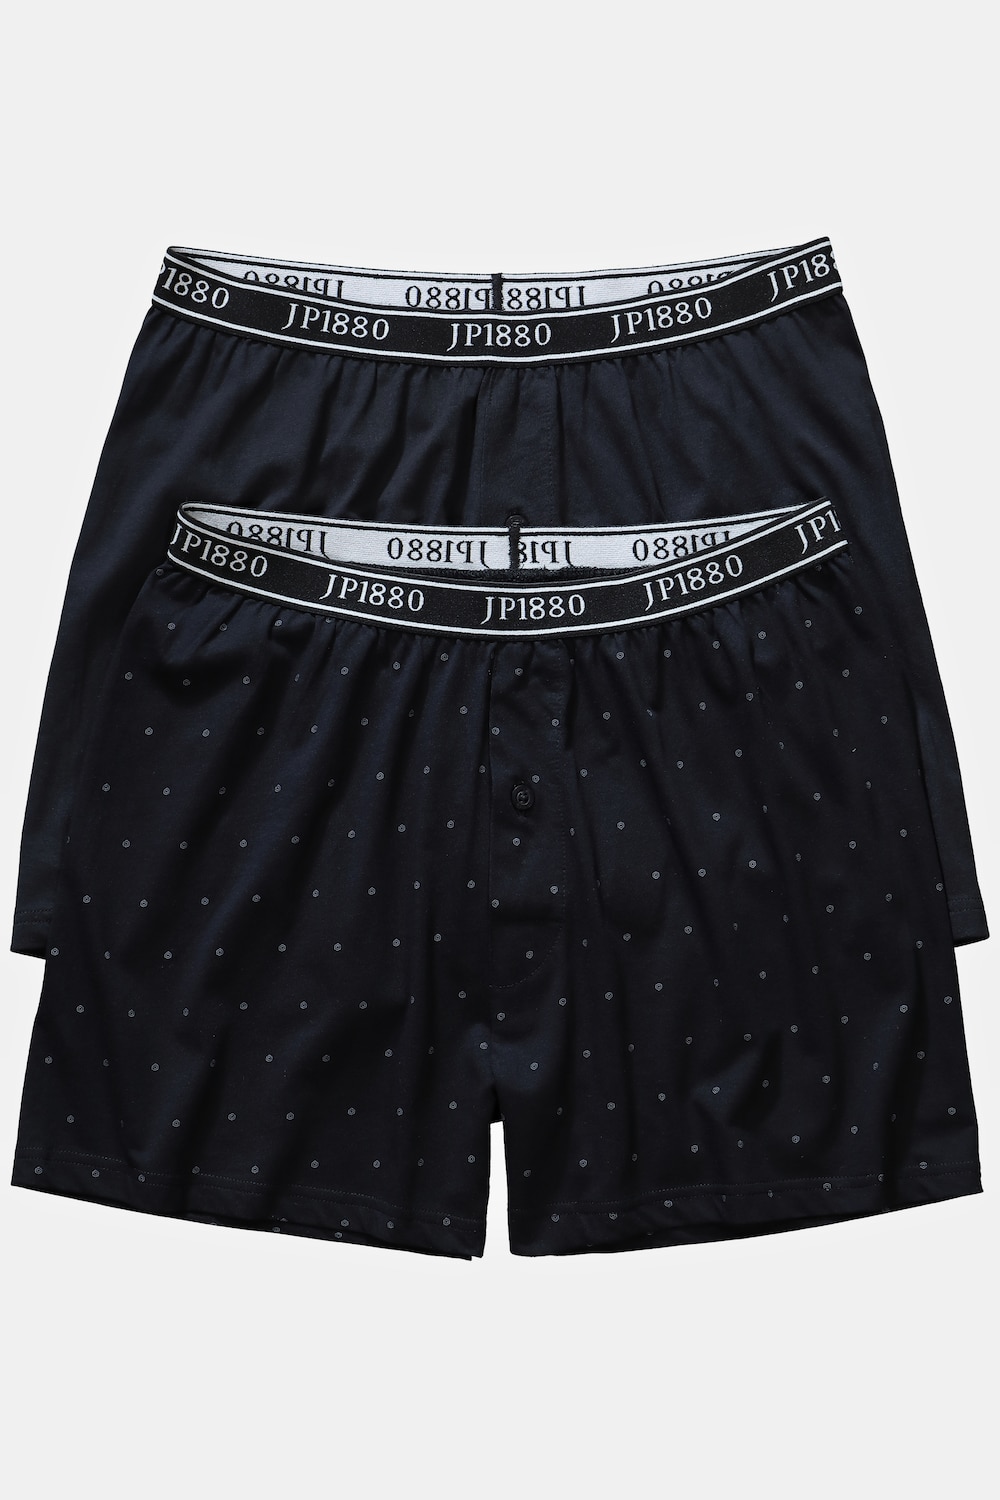 grandes tailles boxers flexnamic®, hommes, noir, taille: 8, coton, jp1880